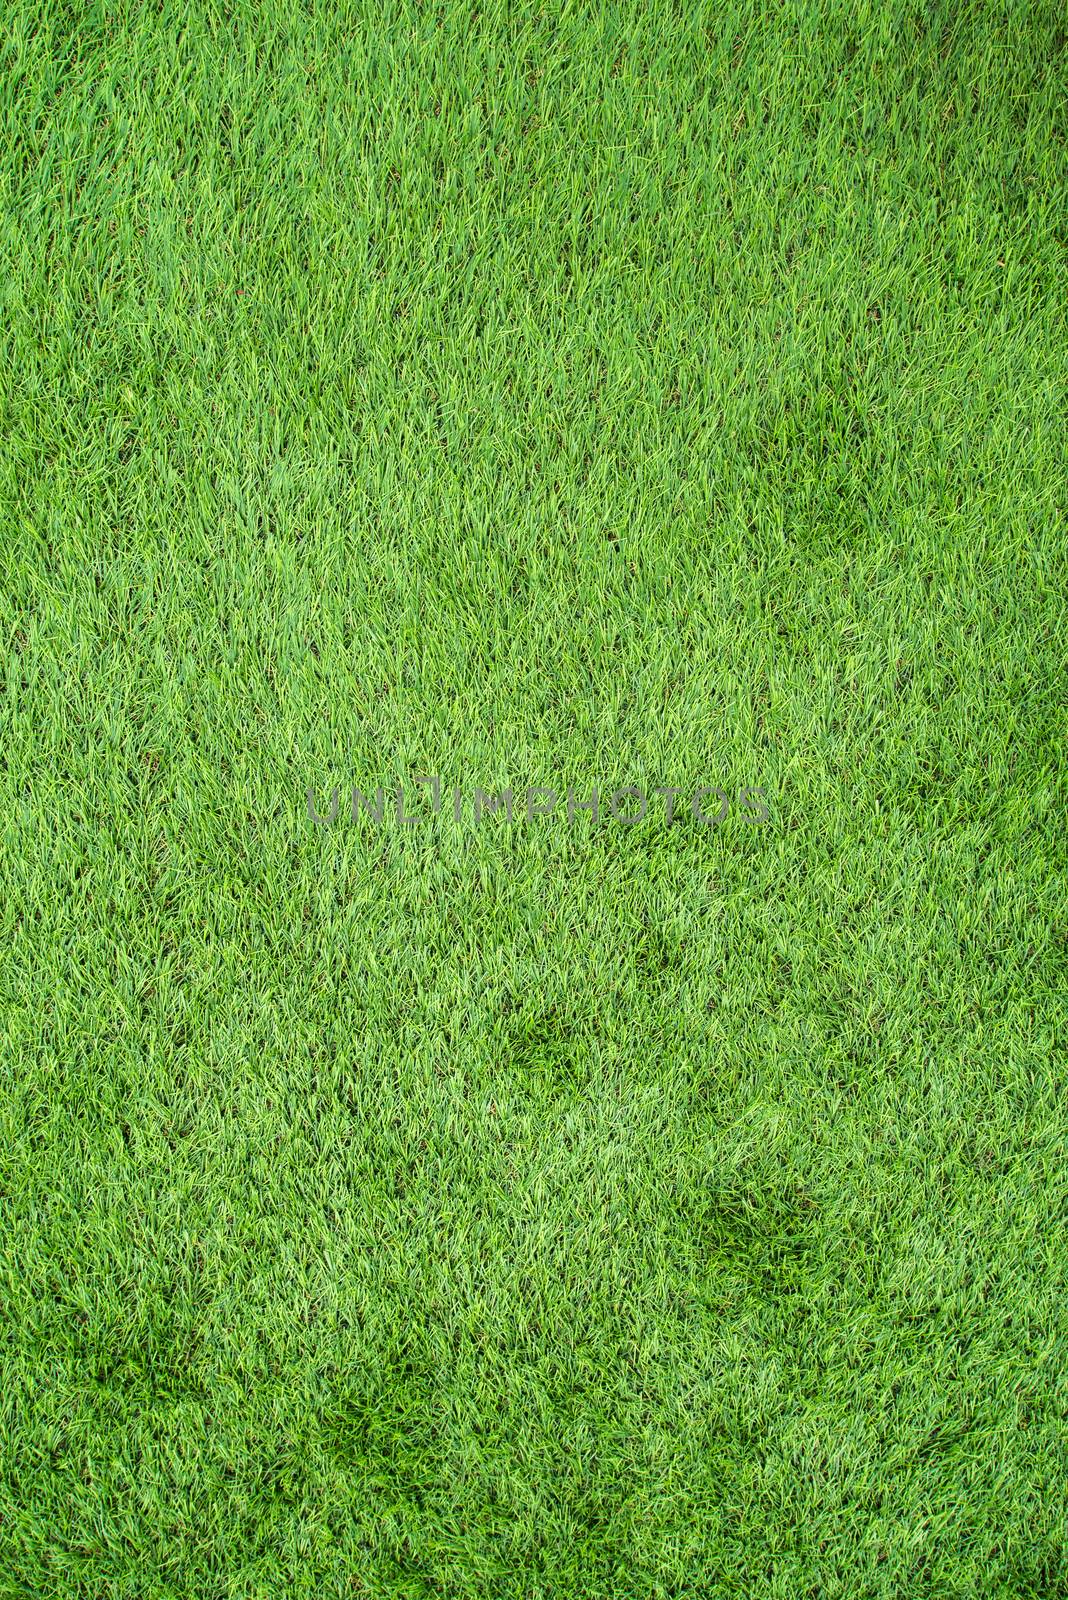 artificial green grass by antpkr